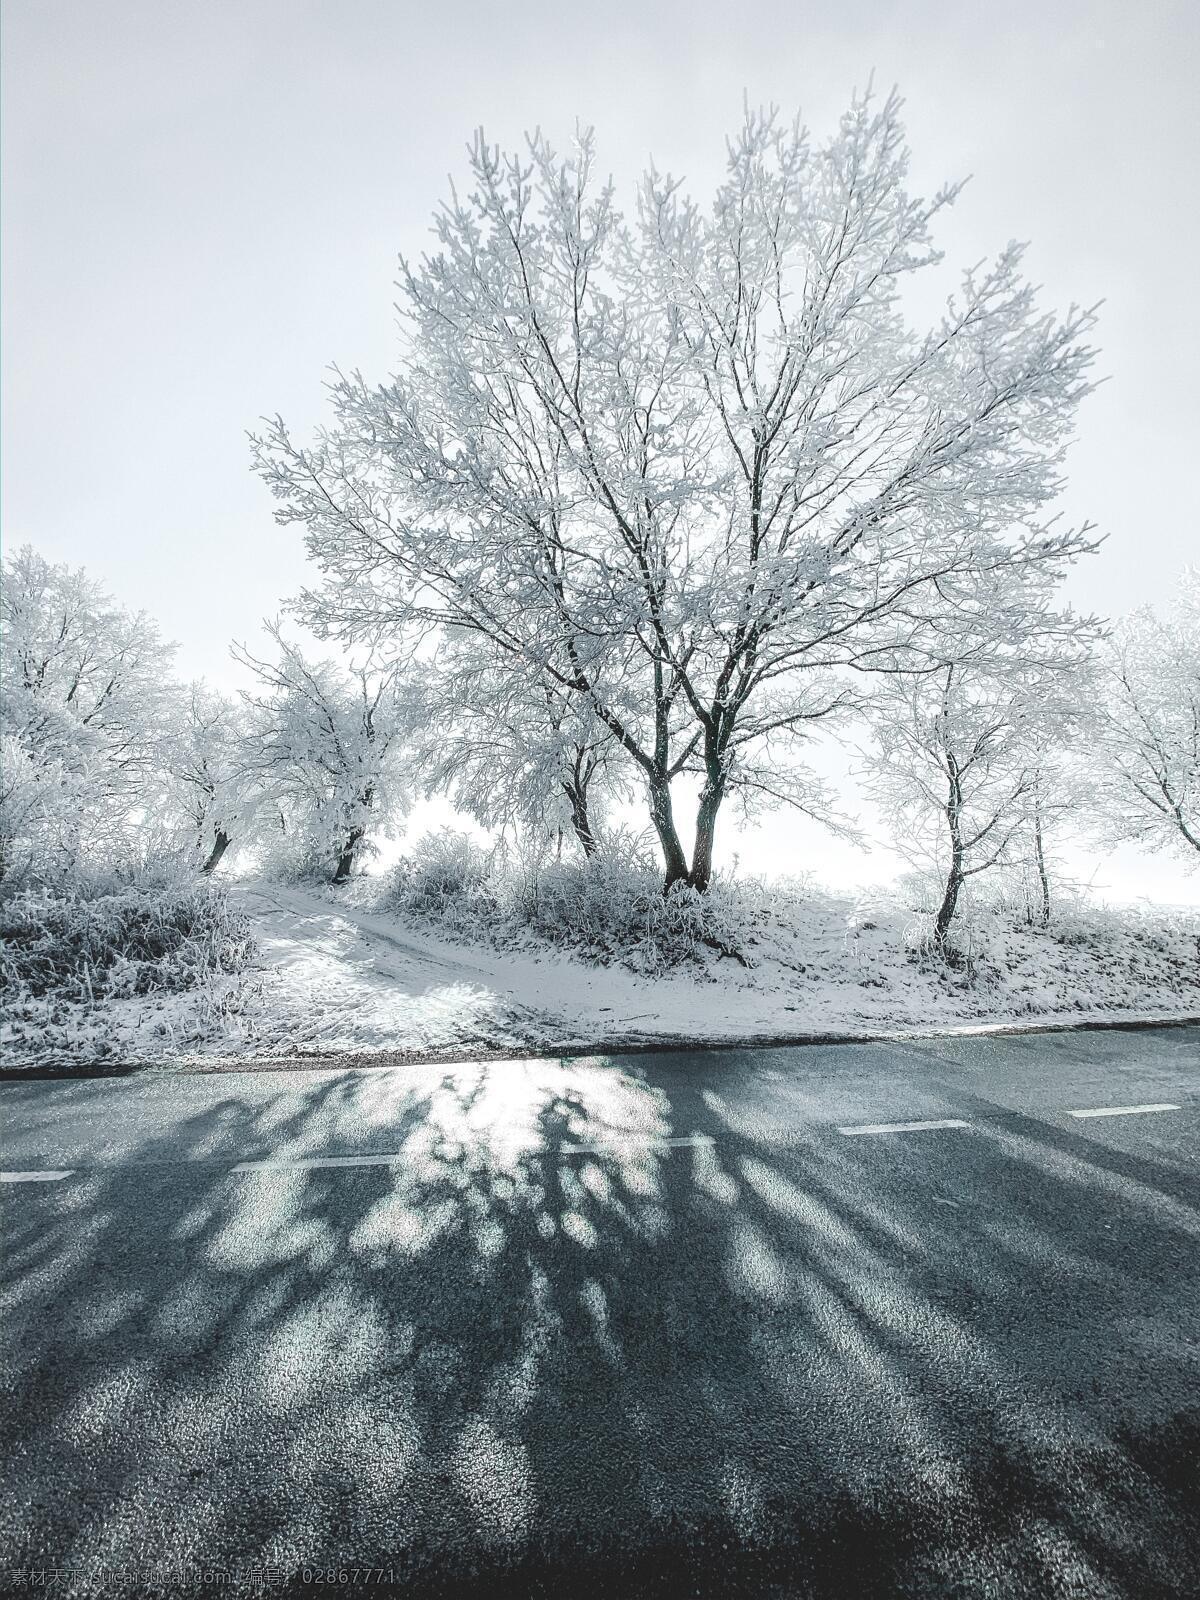 冻住的树 雪白 雪花 雪树 冰冷 冬天 黑白 高清 壁纸 超清 自然景观 自然风景